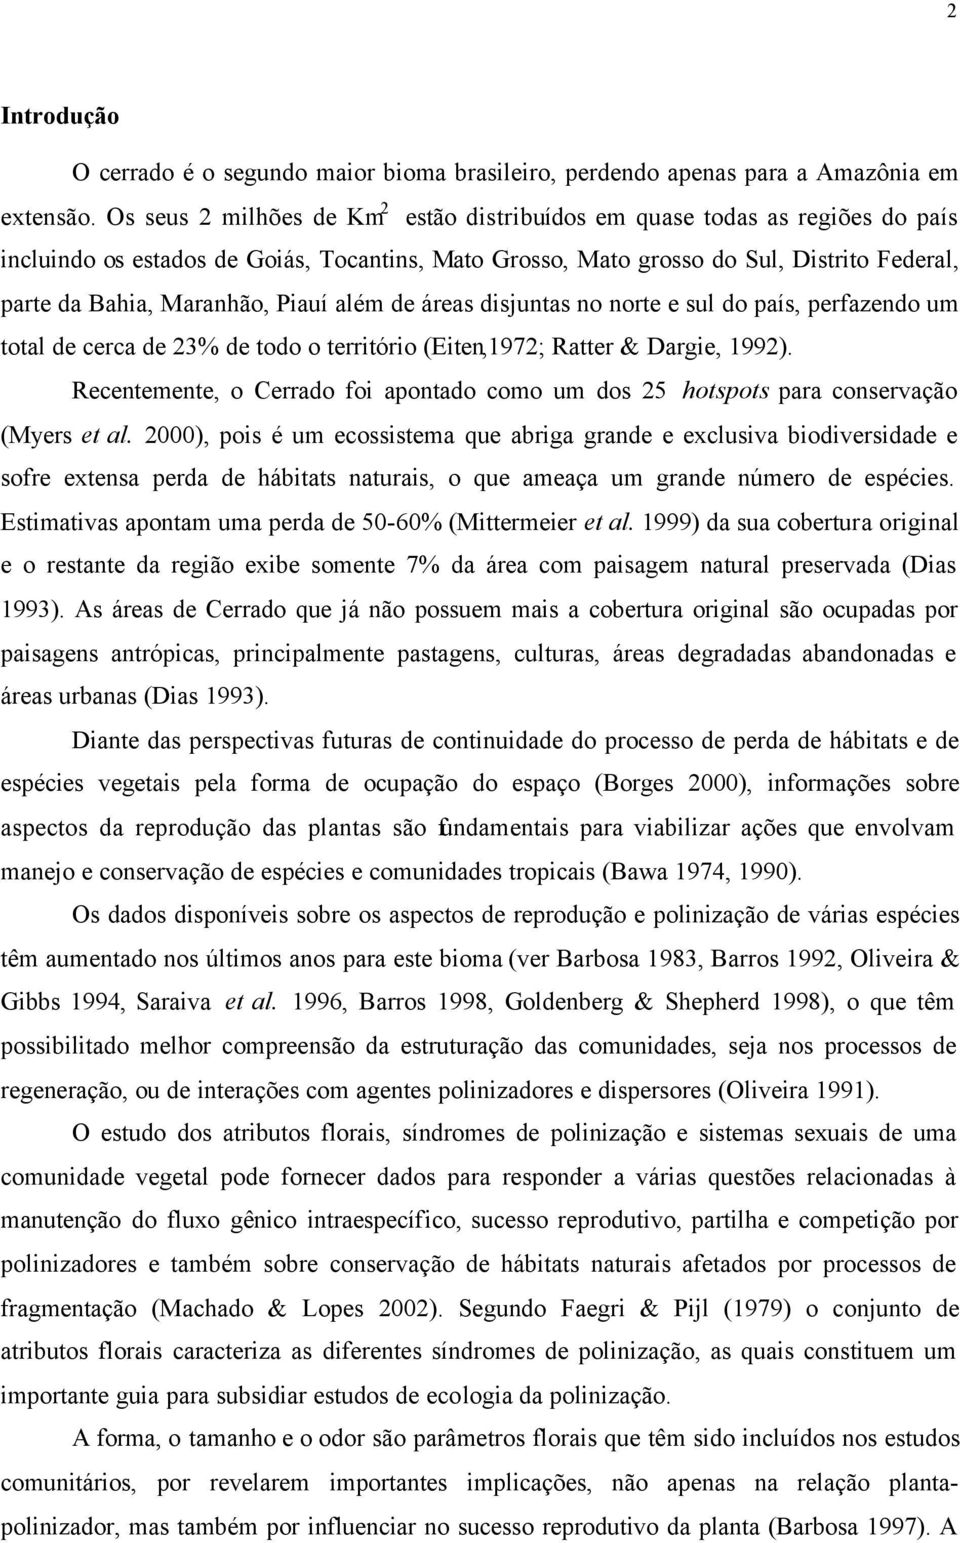 Piauí além de áreas disjuntas no norte e sul do país, perfazendo um total de cerca de 23% de todo o território (Eiten,1972; Ratter & Dargie, 1992).